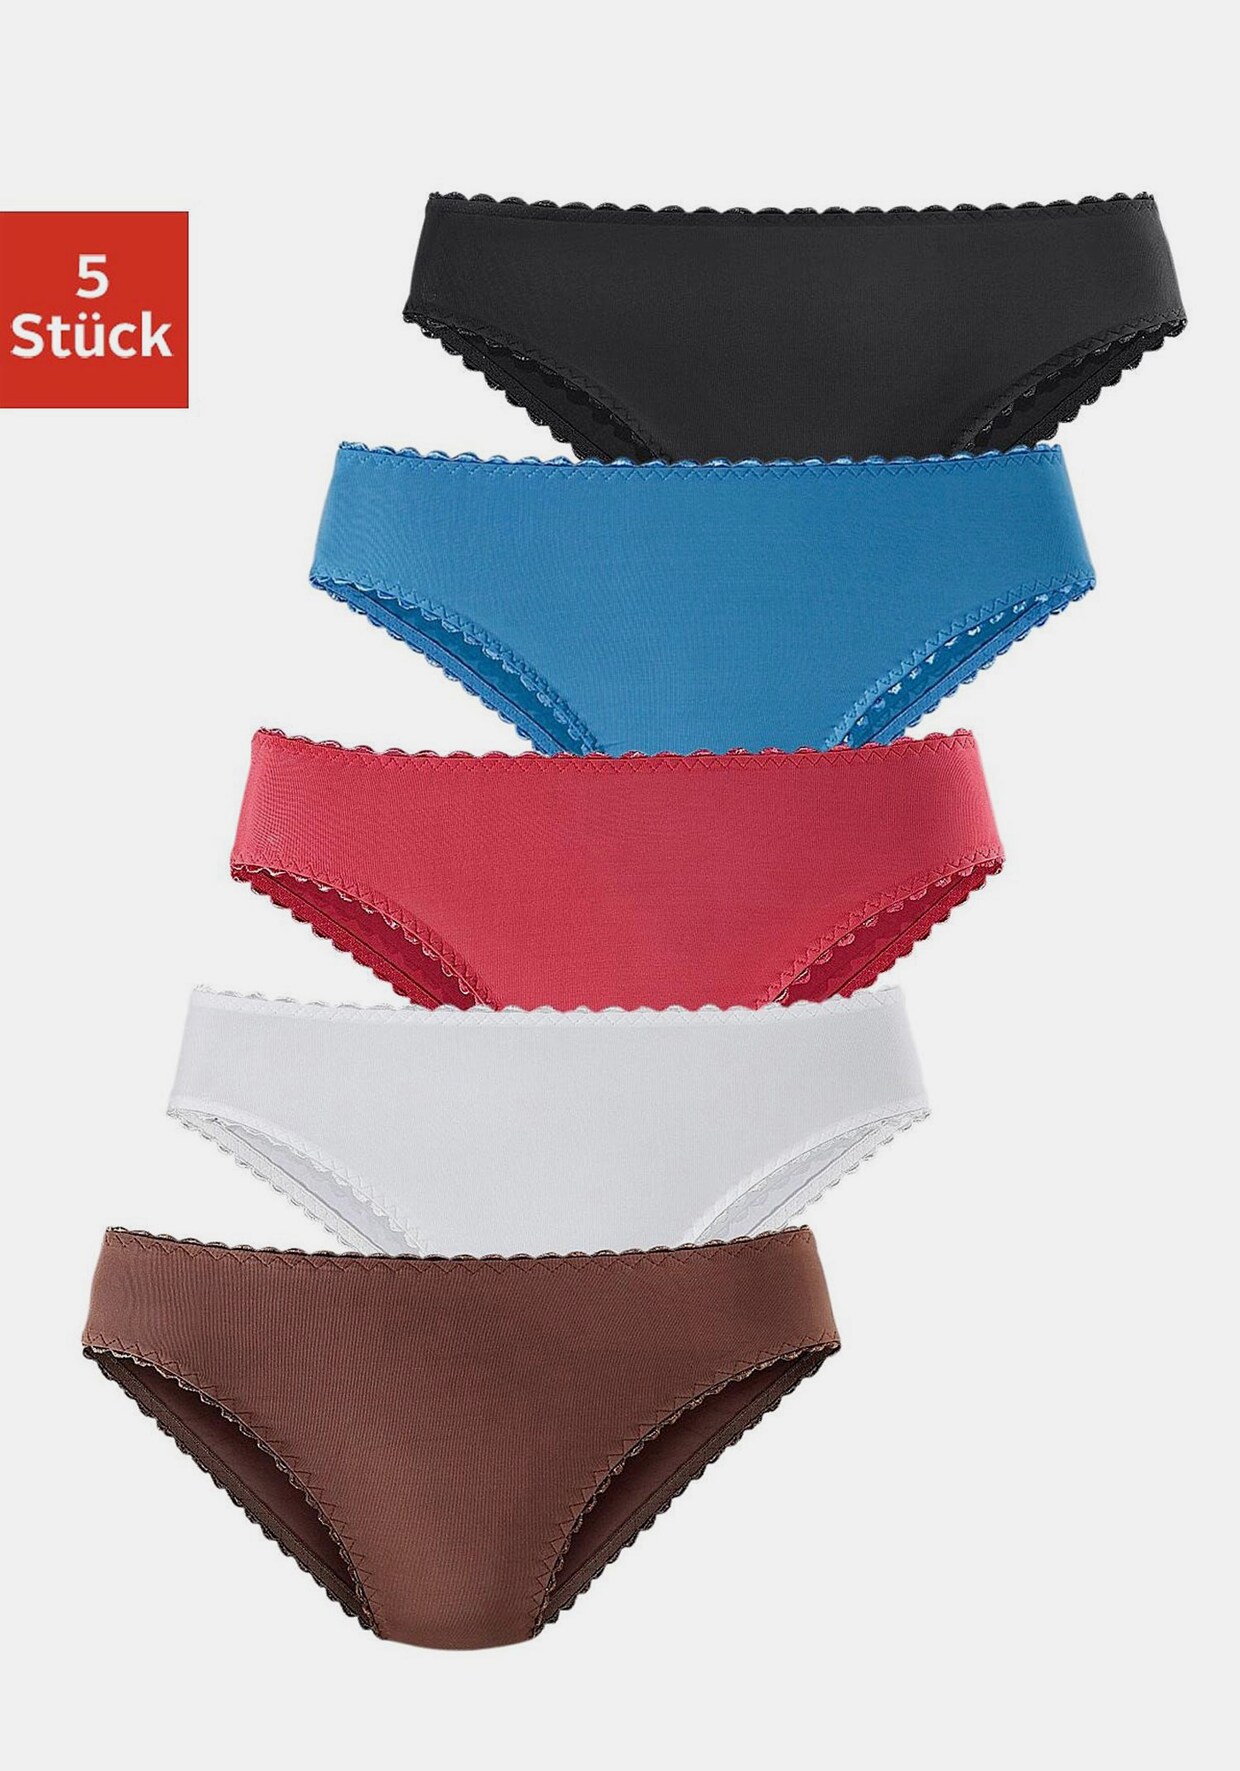 petite fleur Jazz-pants slips - 1x bruin + 1x wit + 1x rood + 1x lichtblauw + 1x zwart